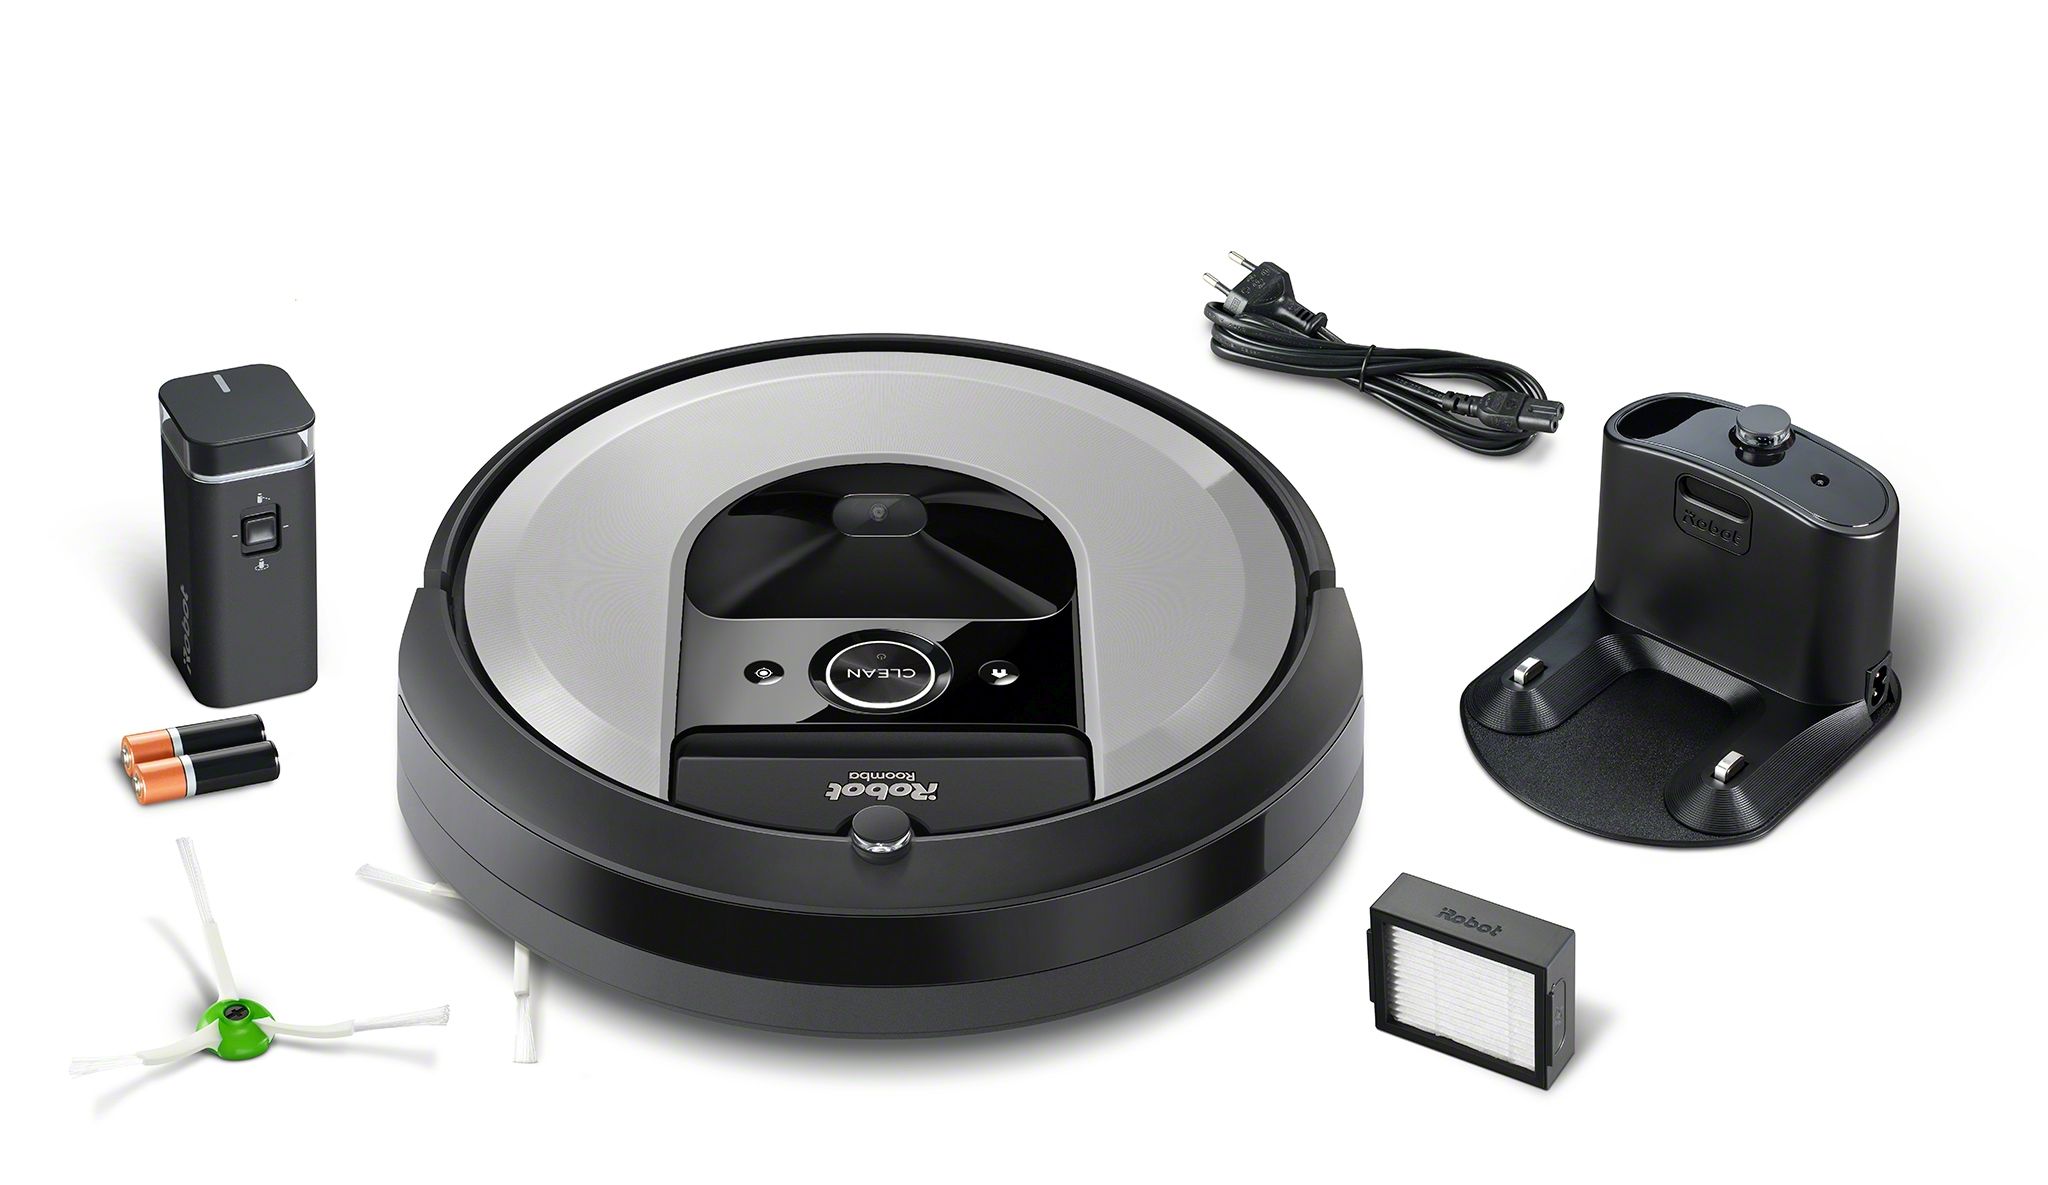 Roomba i7,  робот - пылесос для сухой уборки